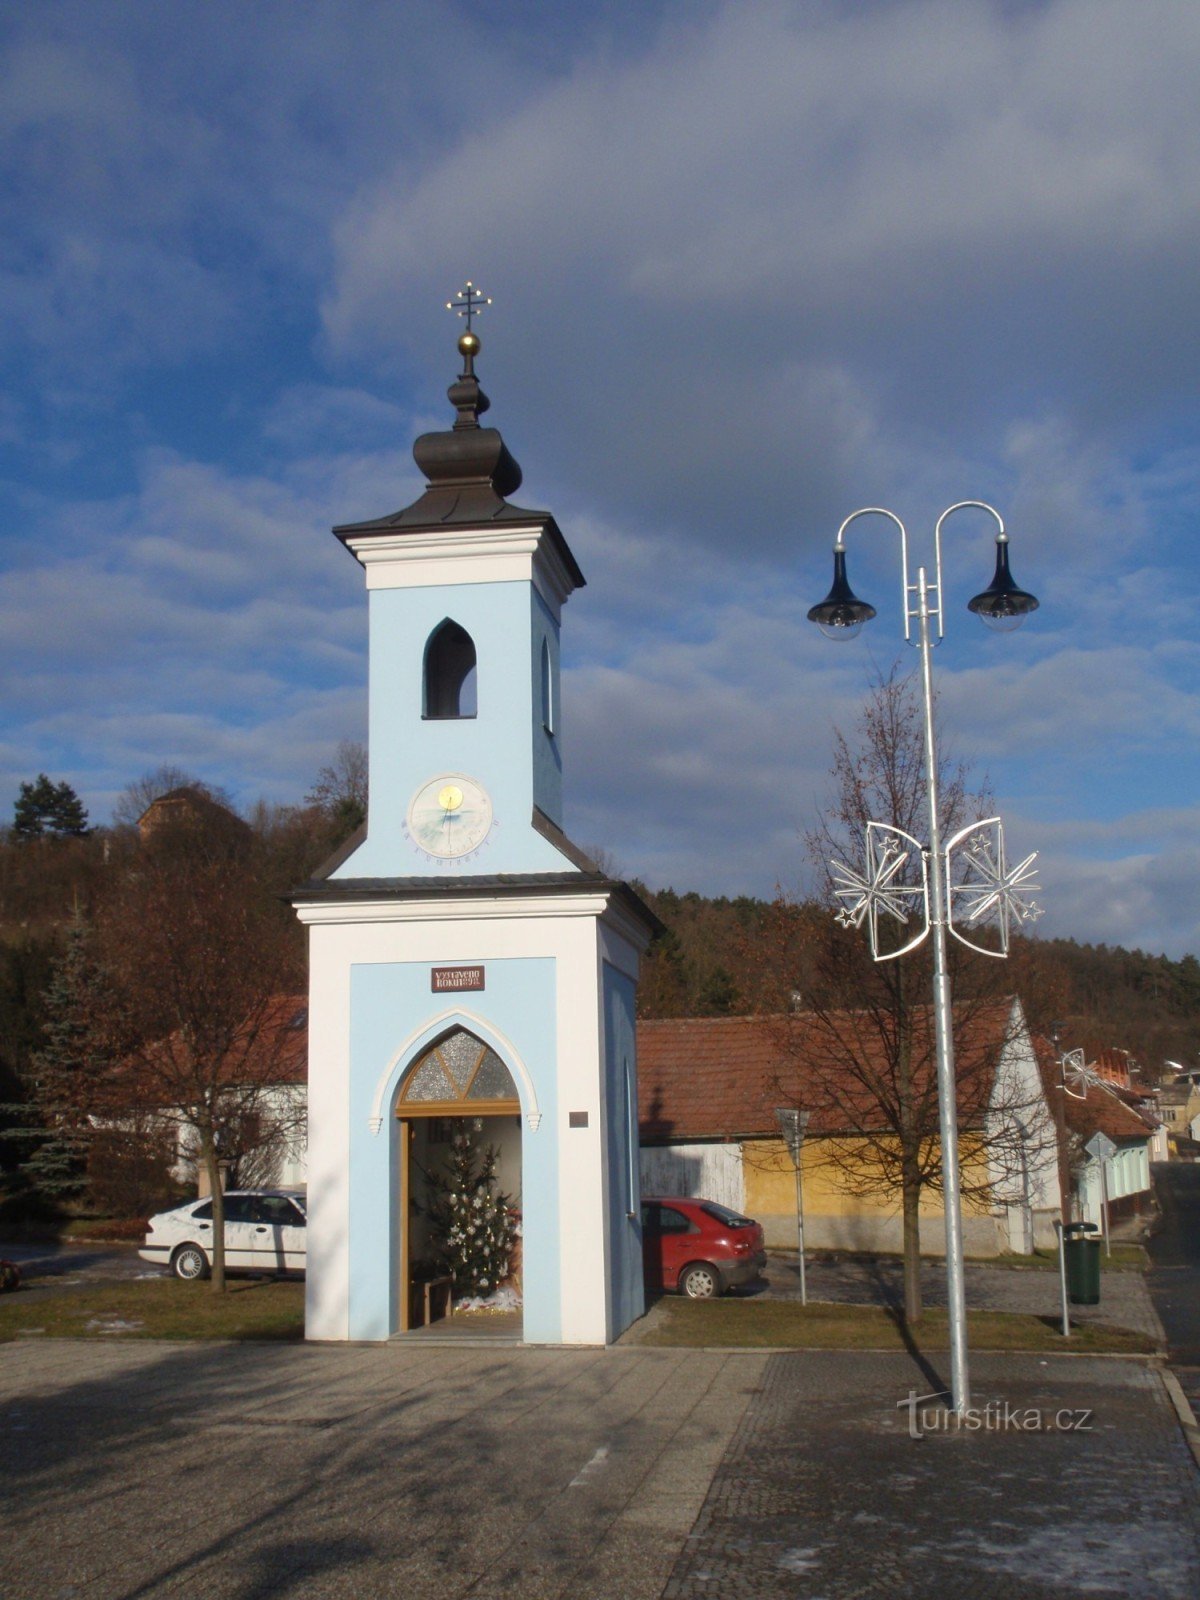 Tượng đài nhỏ ở Horákov